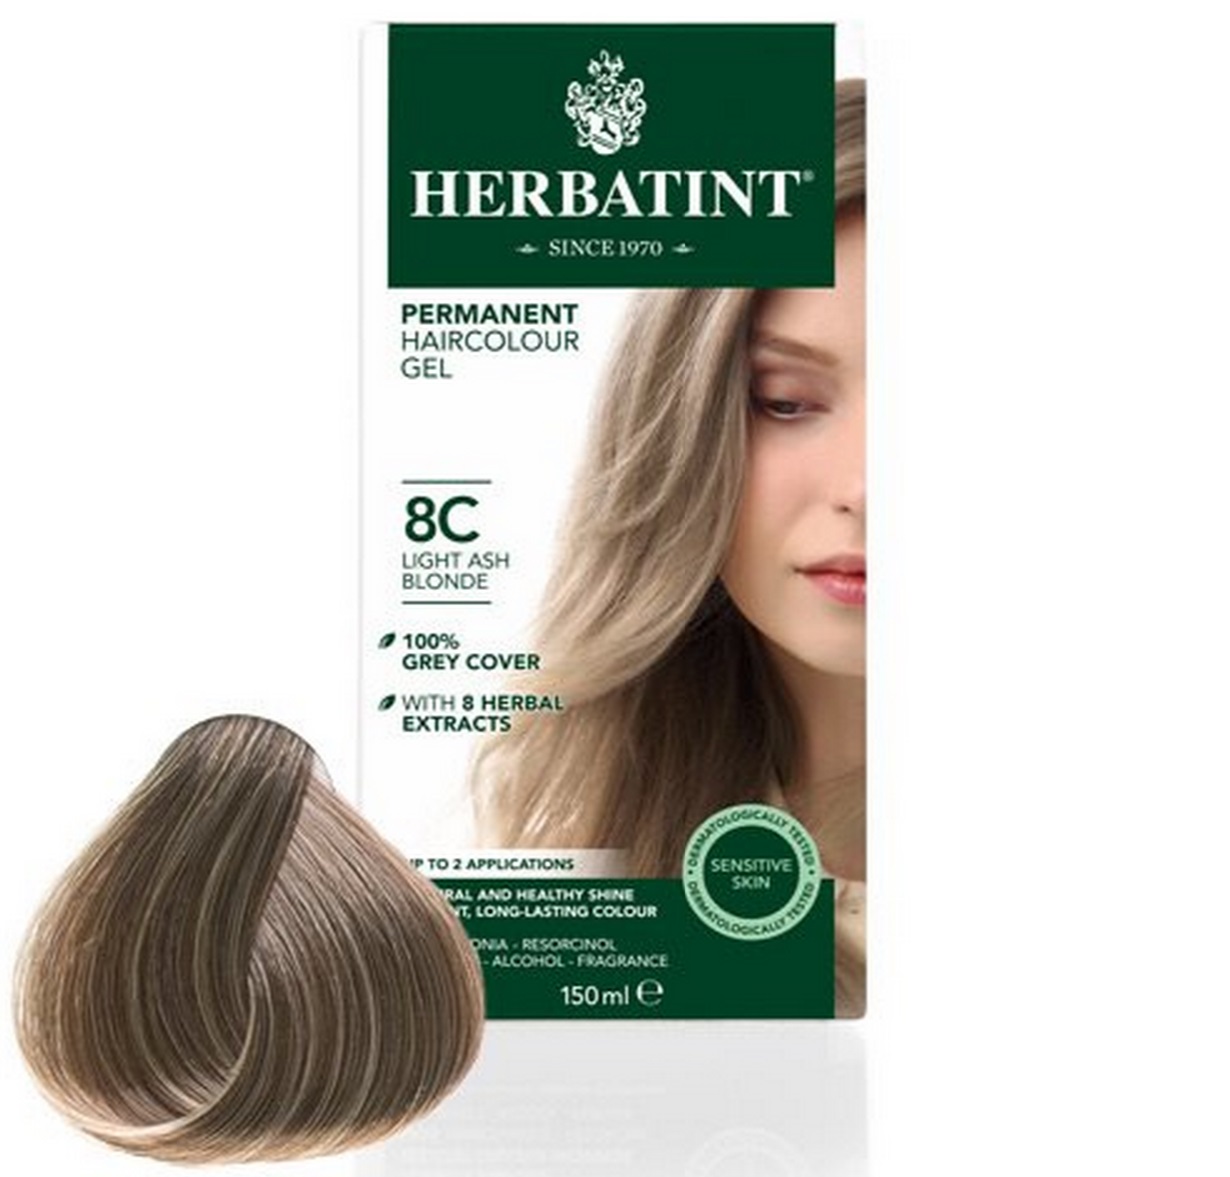 Billede af Herbatint 8C hårfarve Light Ash Blonde, 150ml. hos Ren-velvaereshop.dk